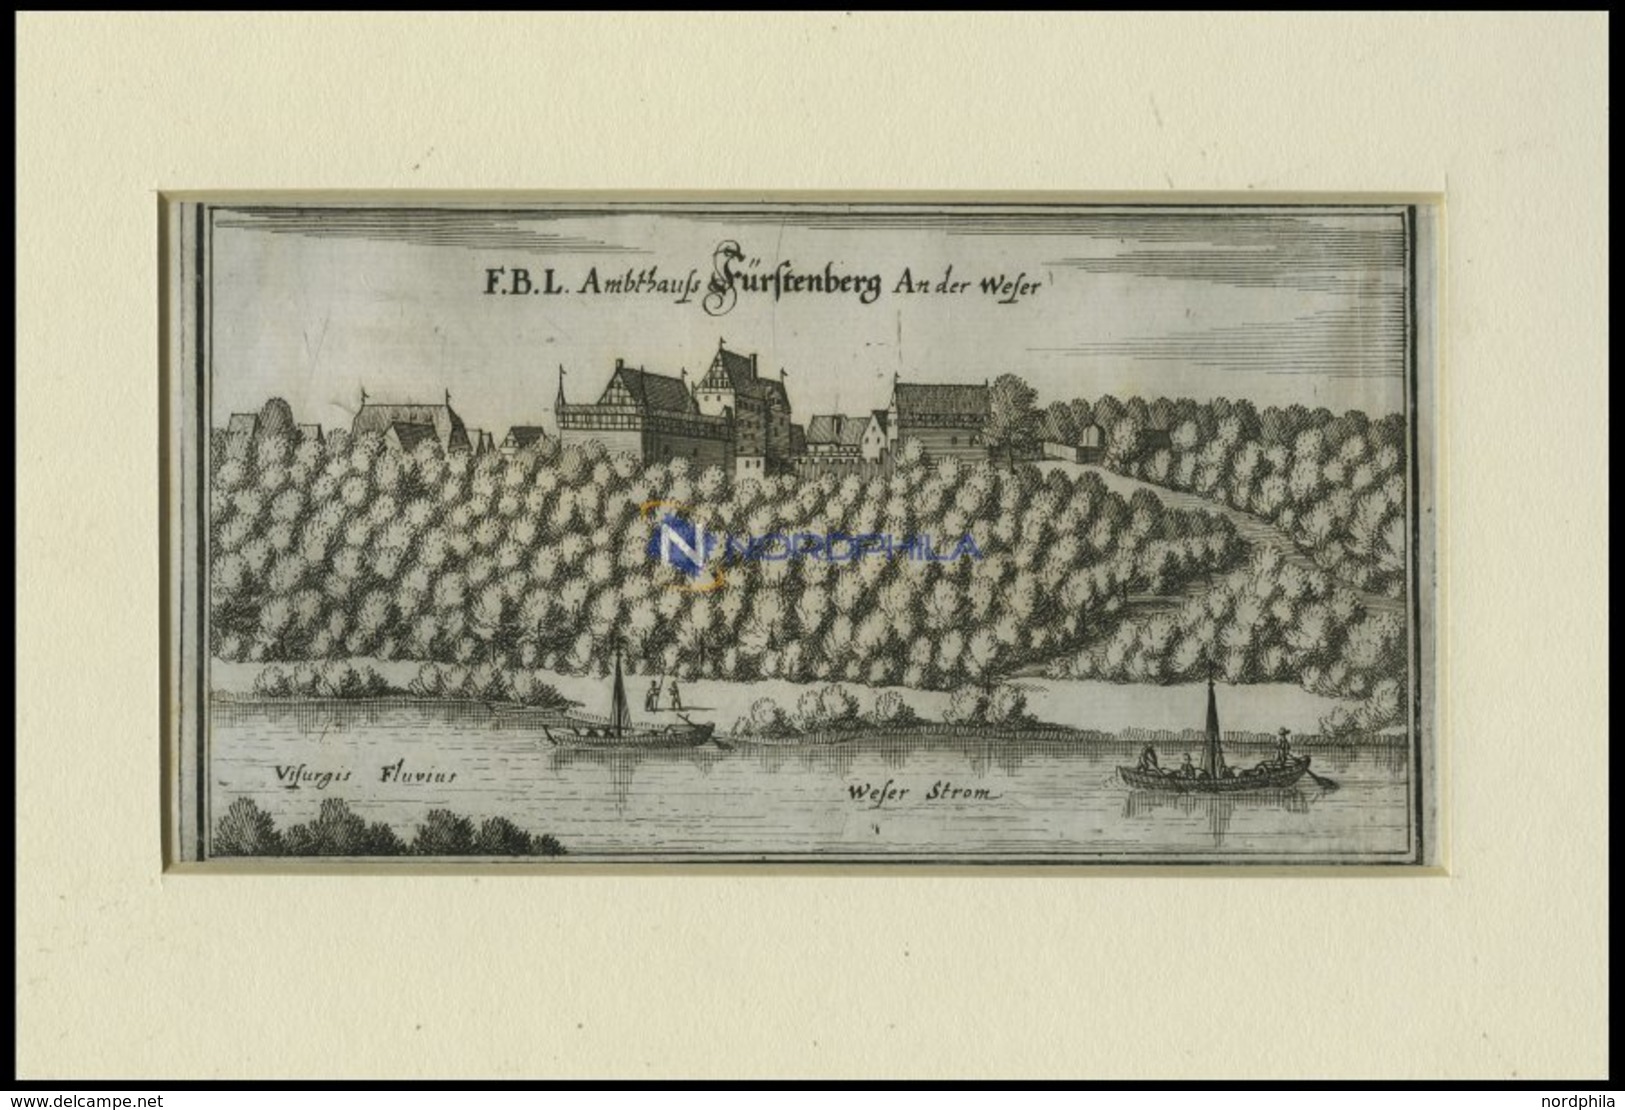 FÜRSTENBERG, Gesamtansicht, Kupferstich Von Merian Um 1645 - Litografía